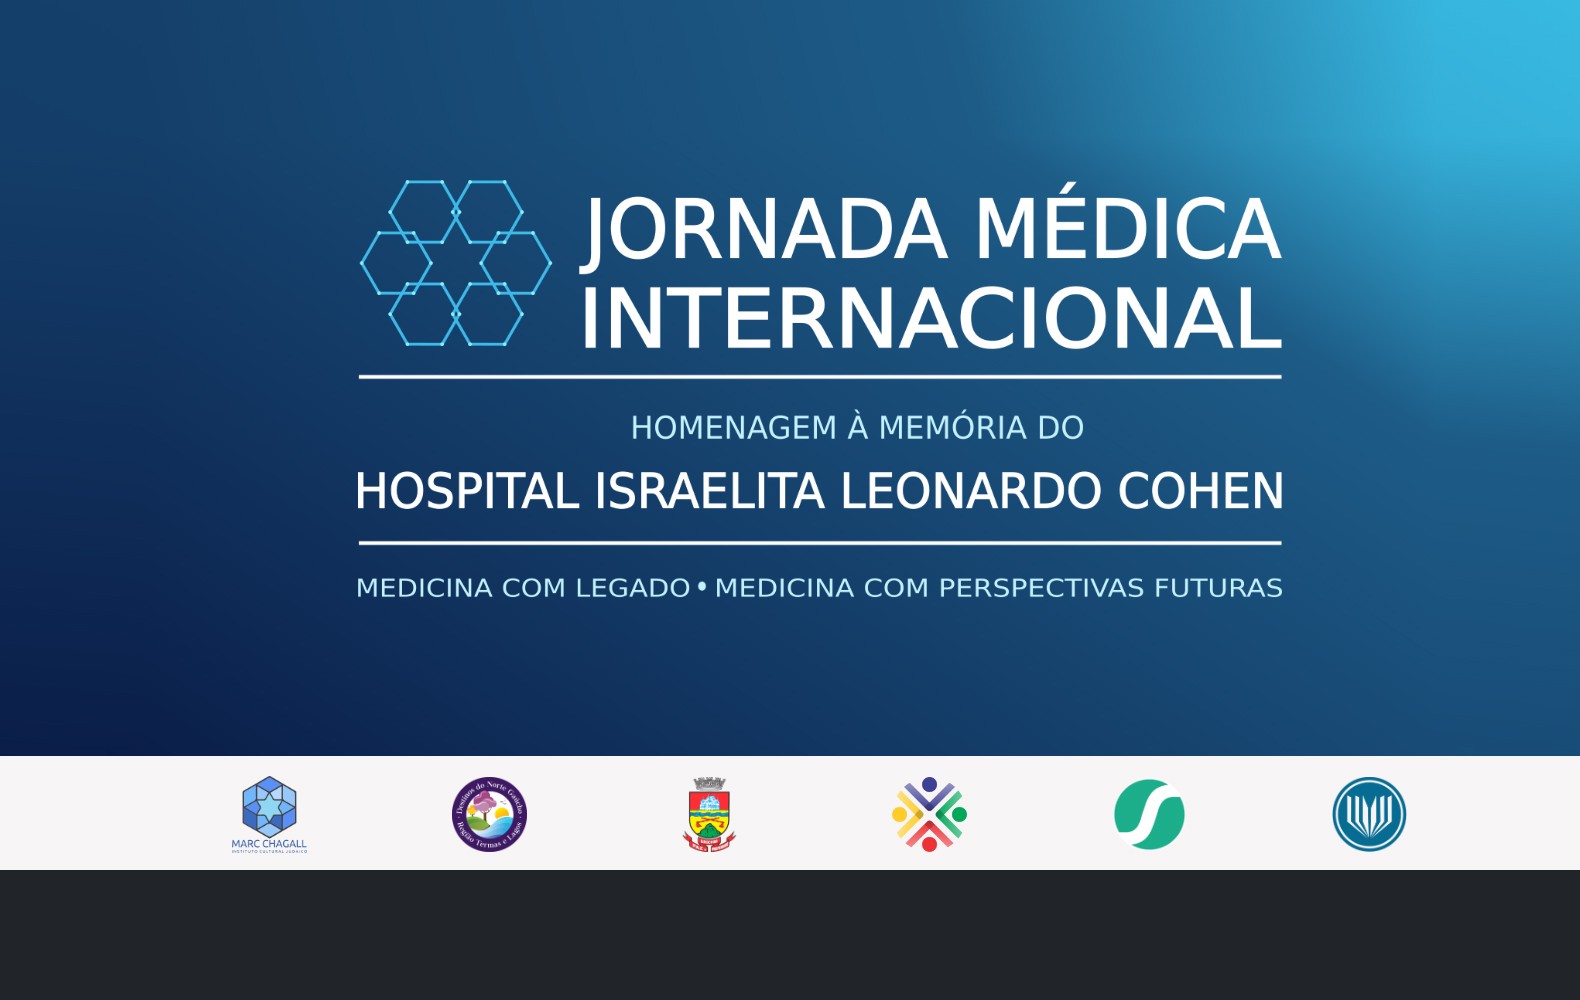  Jornada Médica Internacional